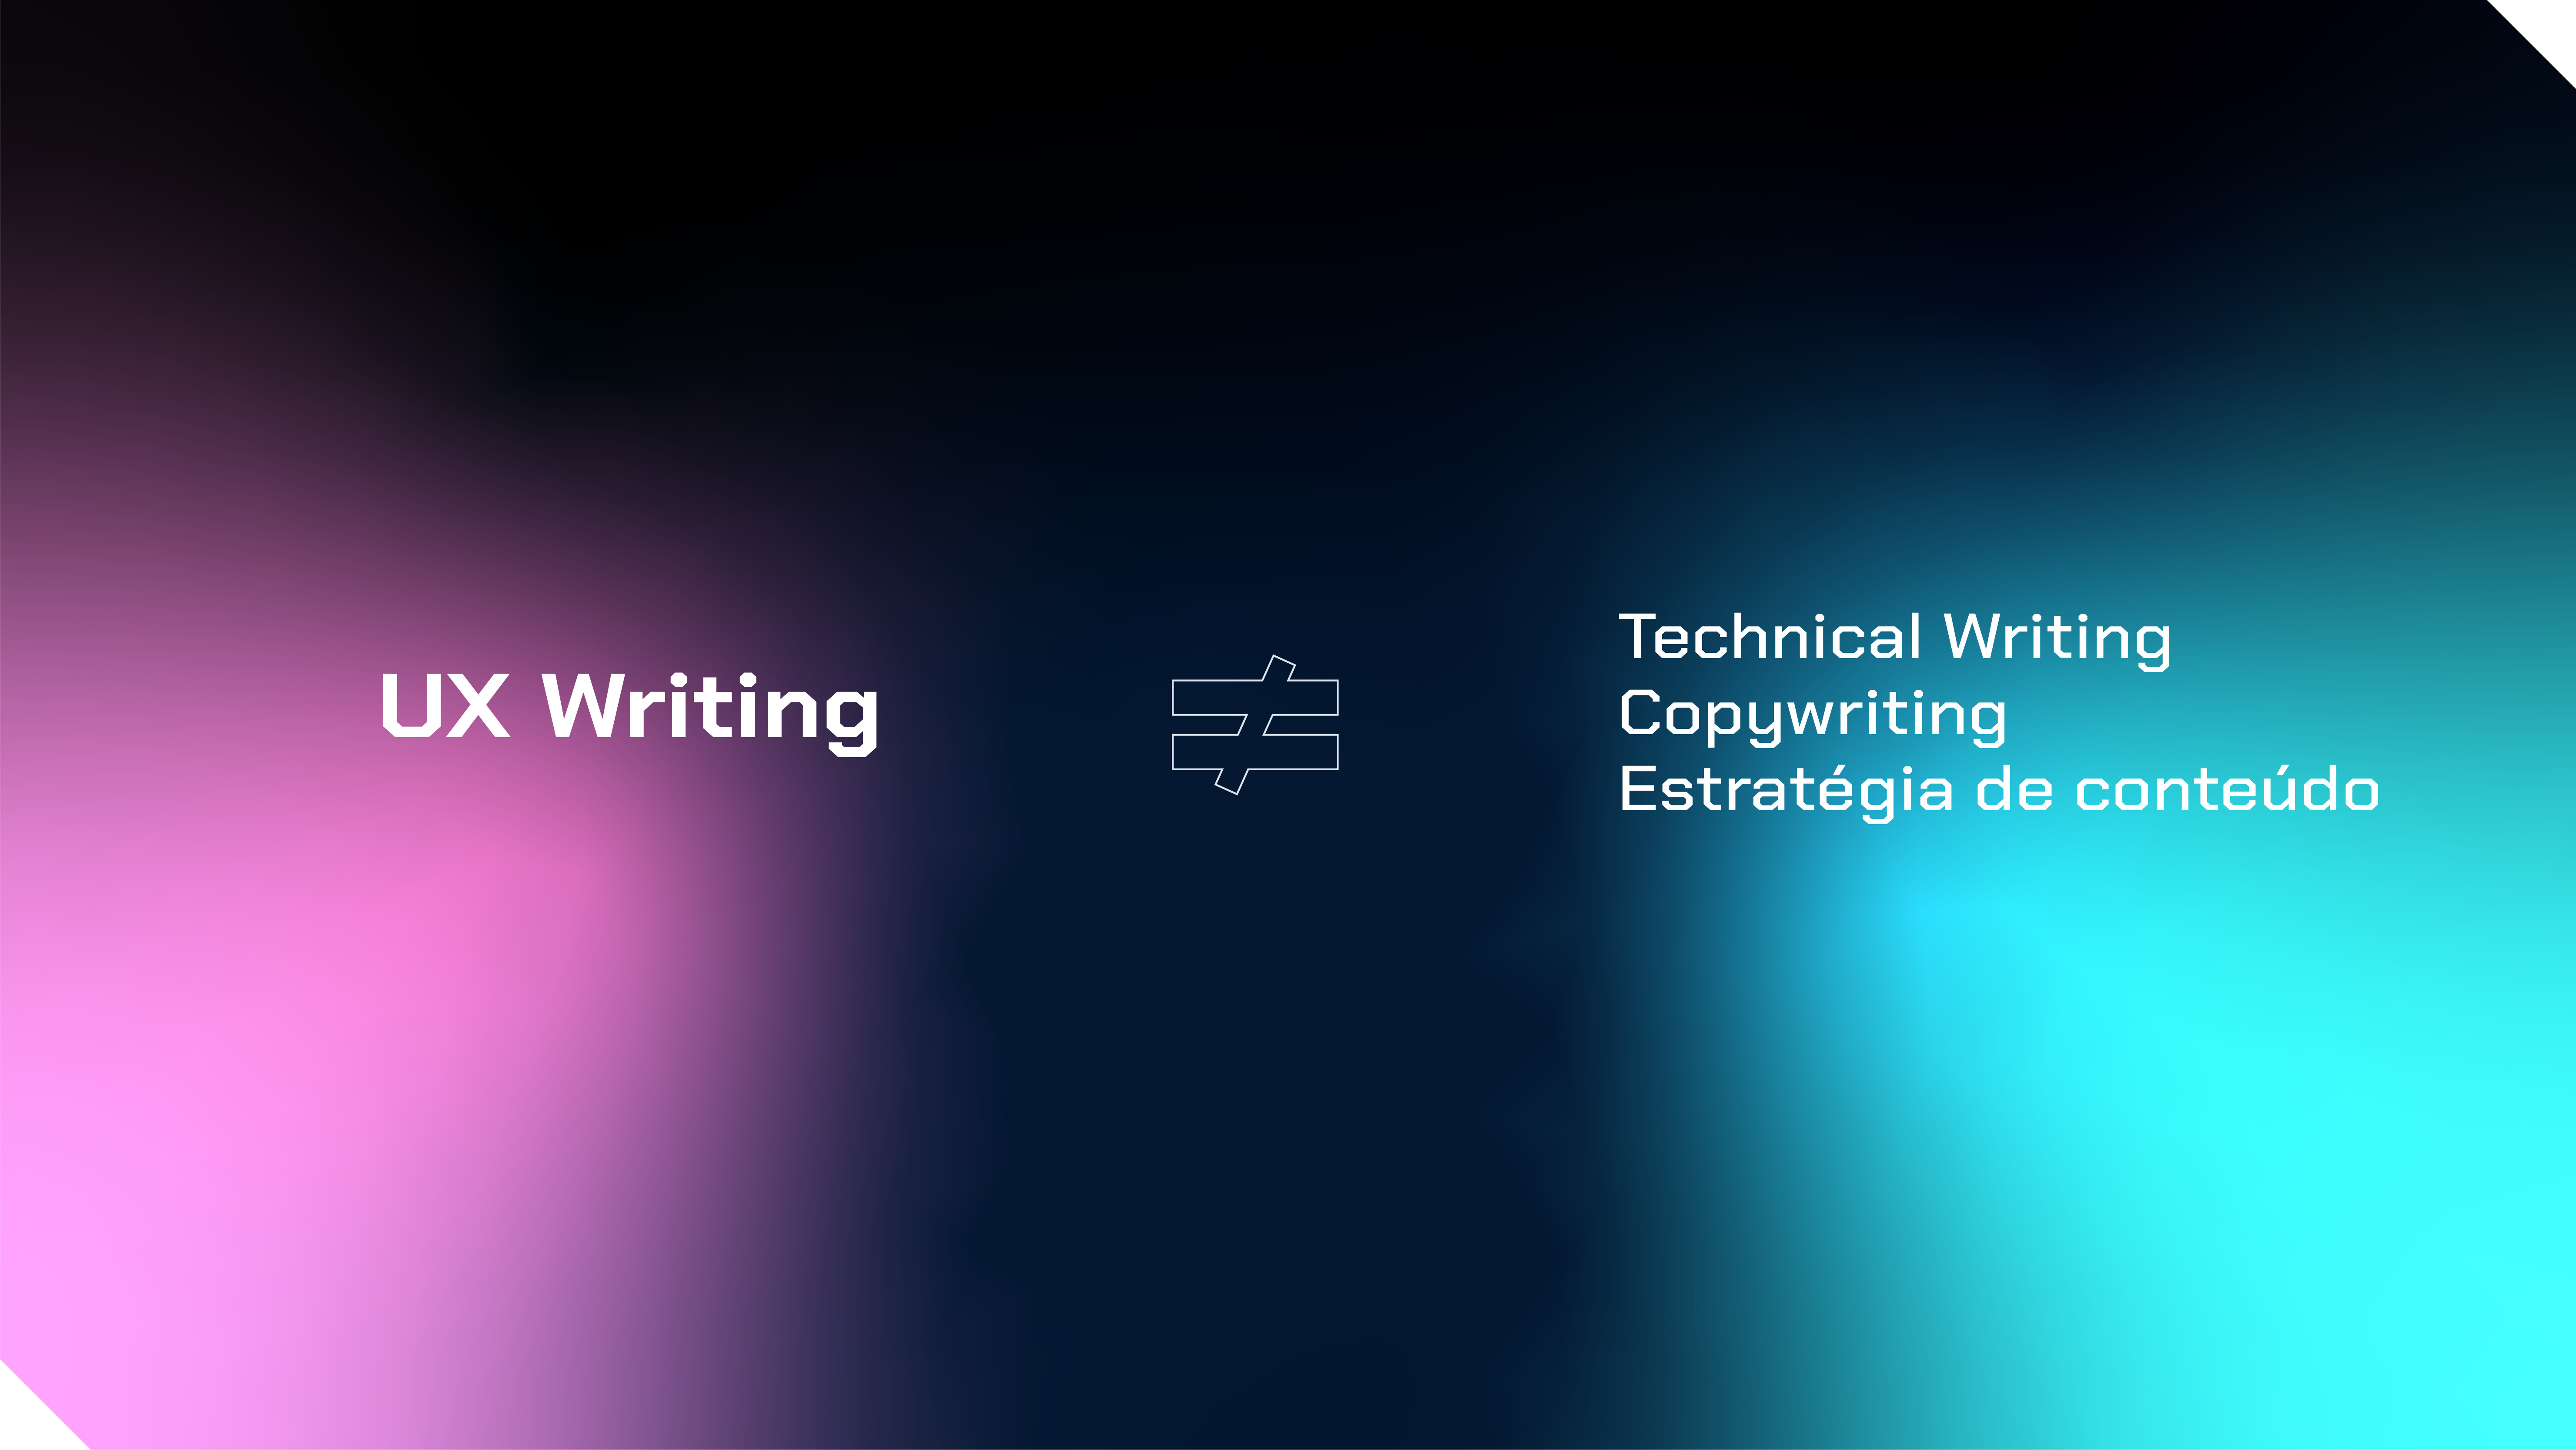 Imagem mostrando que UX Writing é diferente de Technical writing, copywriting e estratégia de conteúdo.